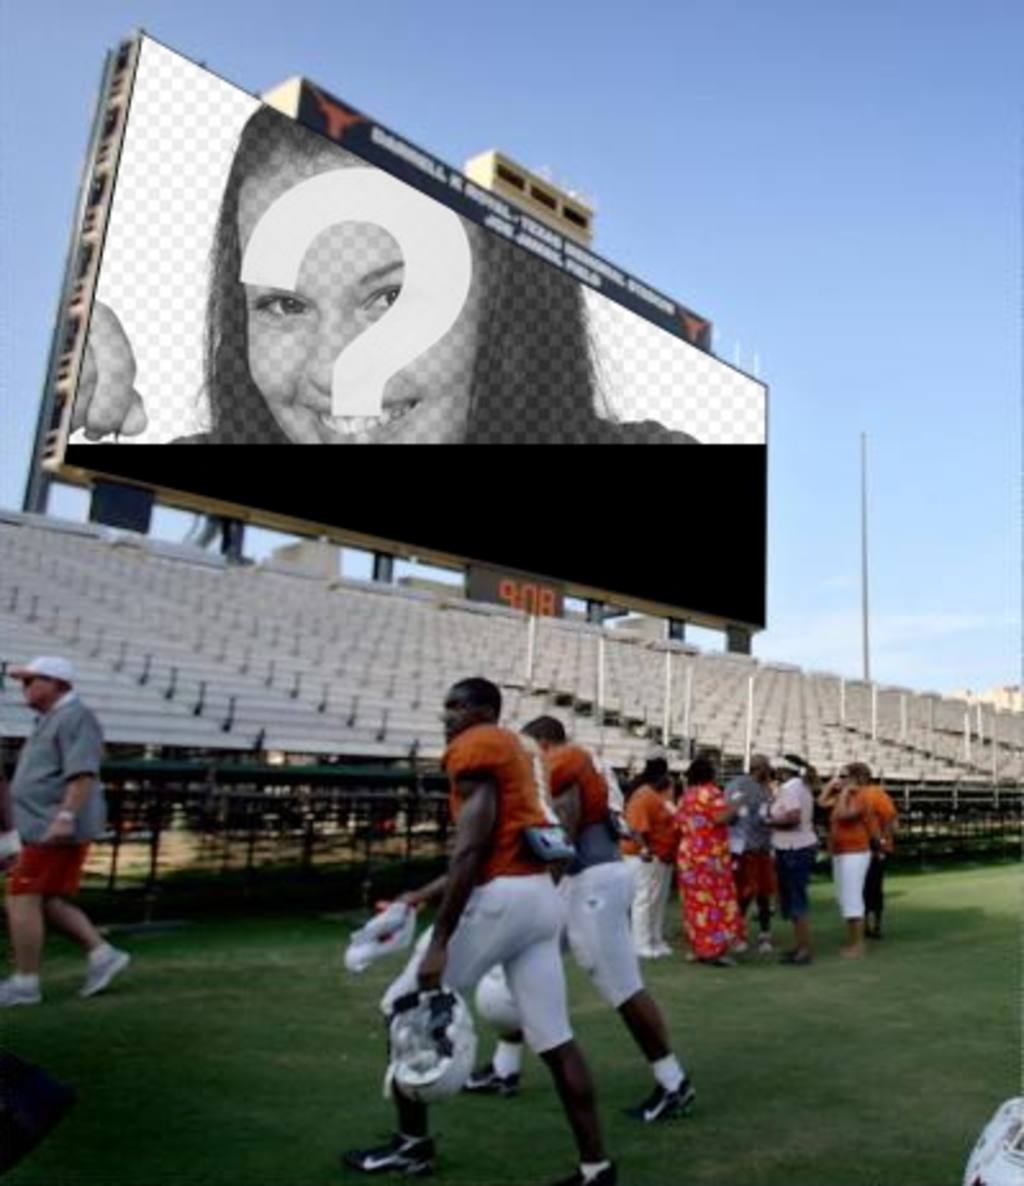 In dieser Fotomontage, wird Ihr Foto auf der großen Leinwand in einem Fußballstadion, erscheinen, wo Menschen, darunter..